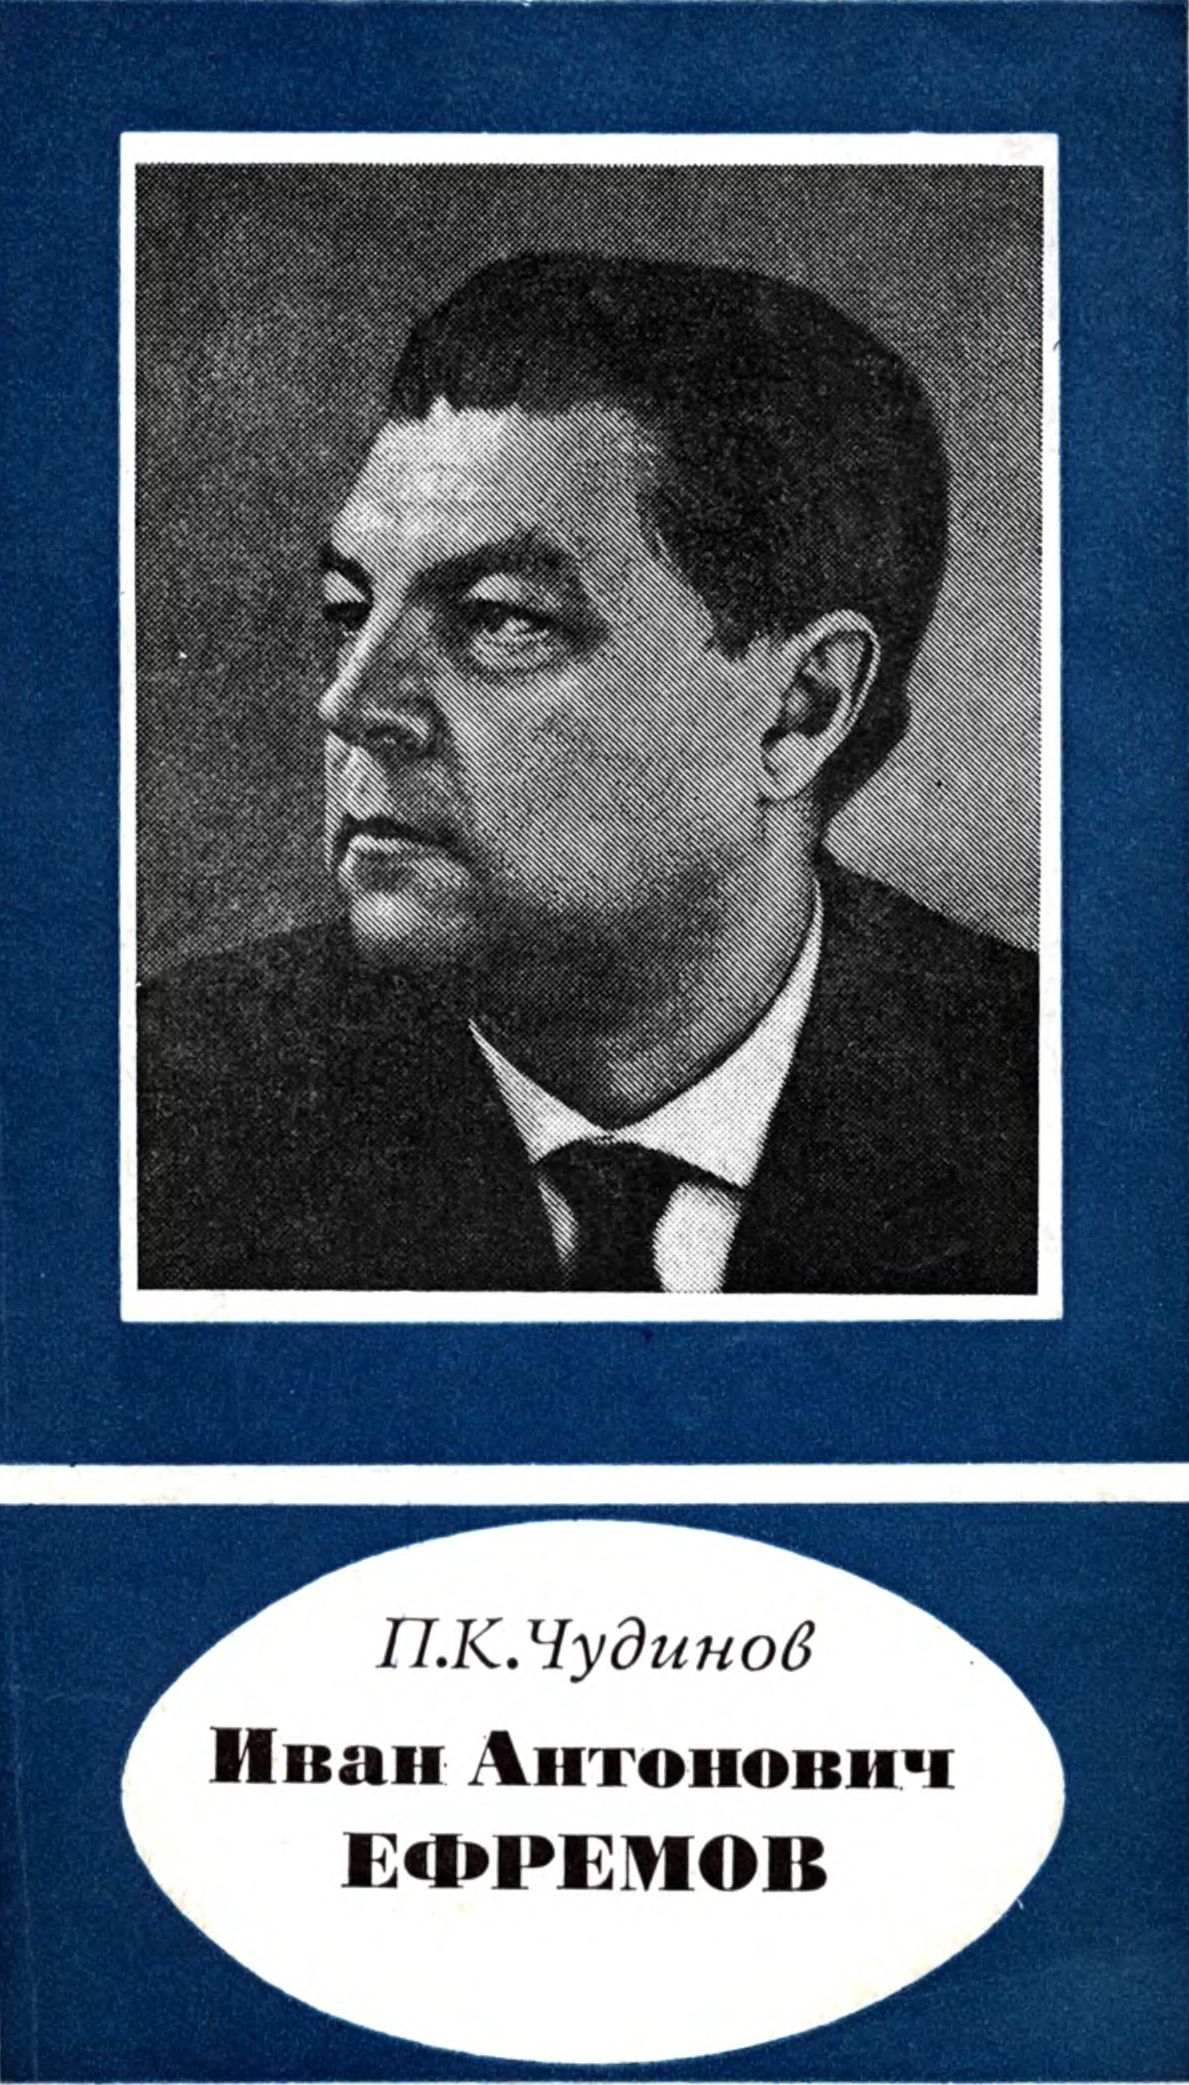 П.К. Чудинов. «Иван Антонович Ефремов (1907—1972)»